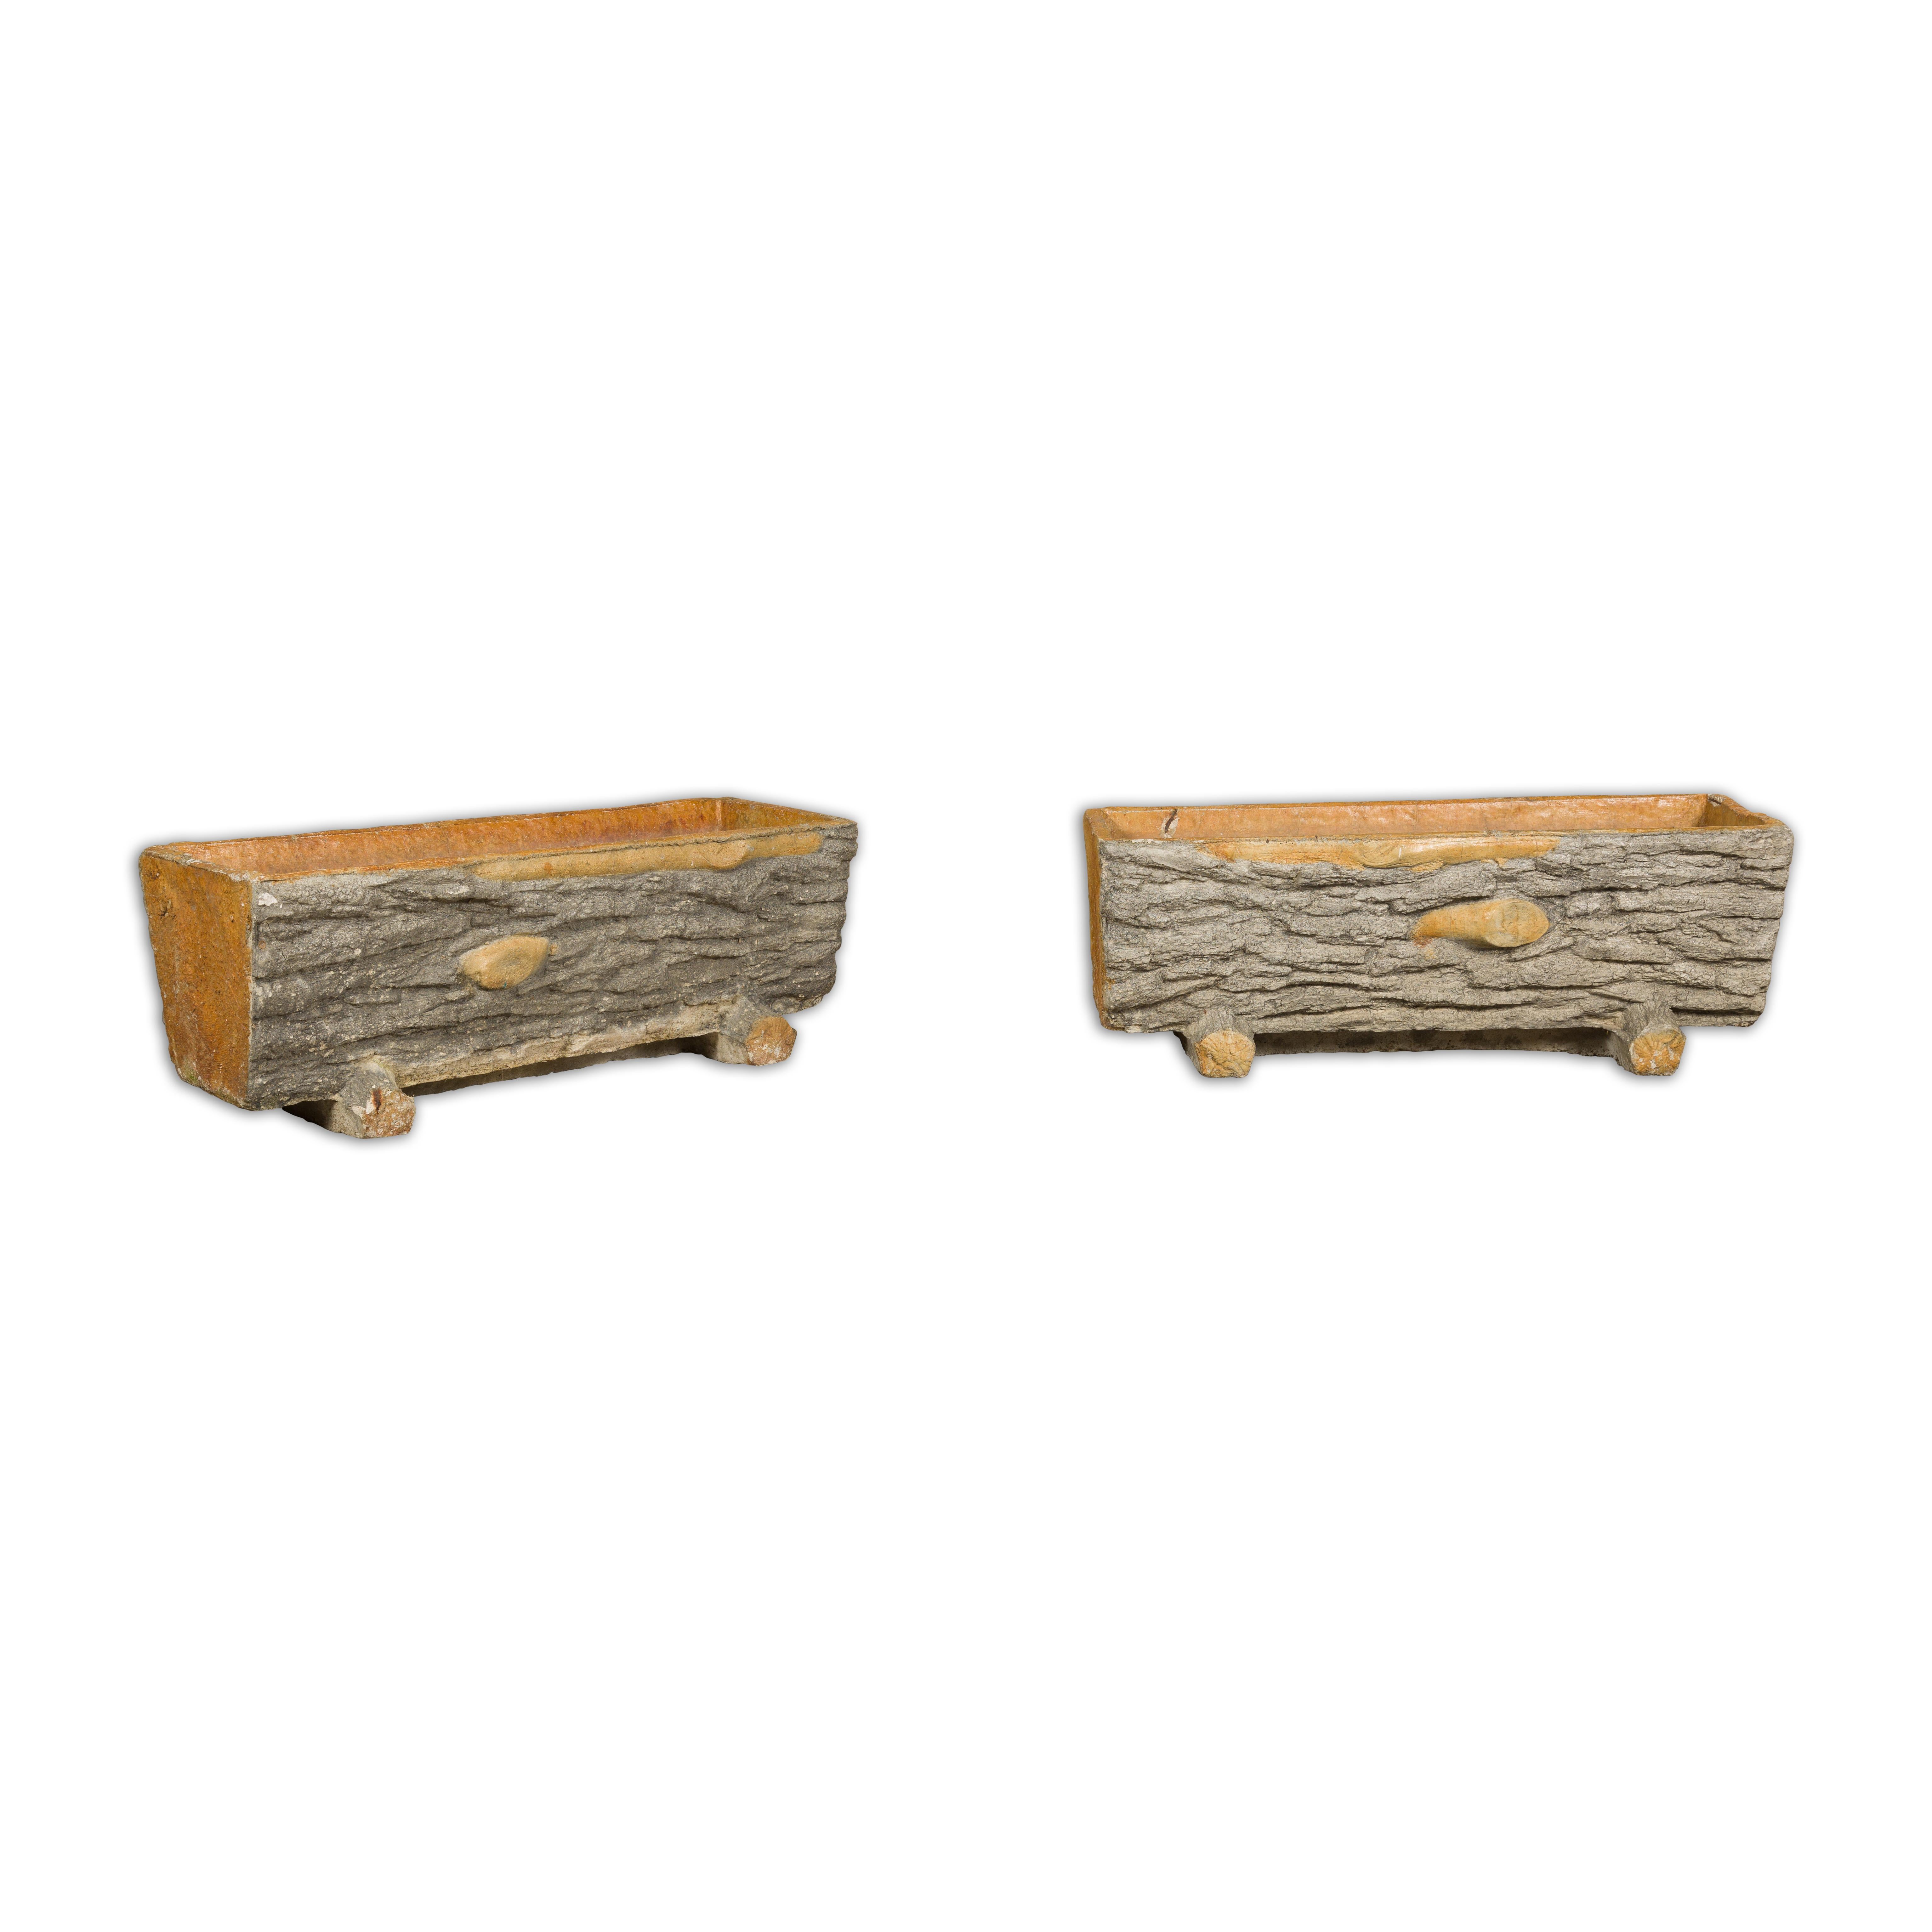 Zwei Pflanzgefäße aus Beton in Grau- und Orangetönen in Form eines Boi-Troges, um 1930. Verschönern Sie Ihren Außenbereich mit diesem bezaubernden Paar trichterförmiger Bois-Pflanzgefäße aus den 1930er Jahren. Diese Pflanzgefäße sind aus dauerhaftem